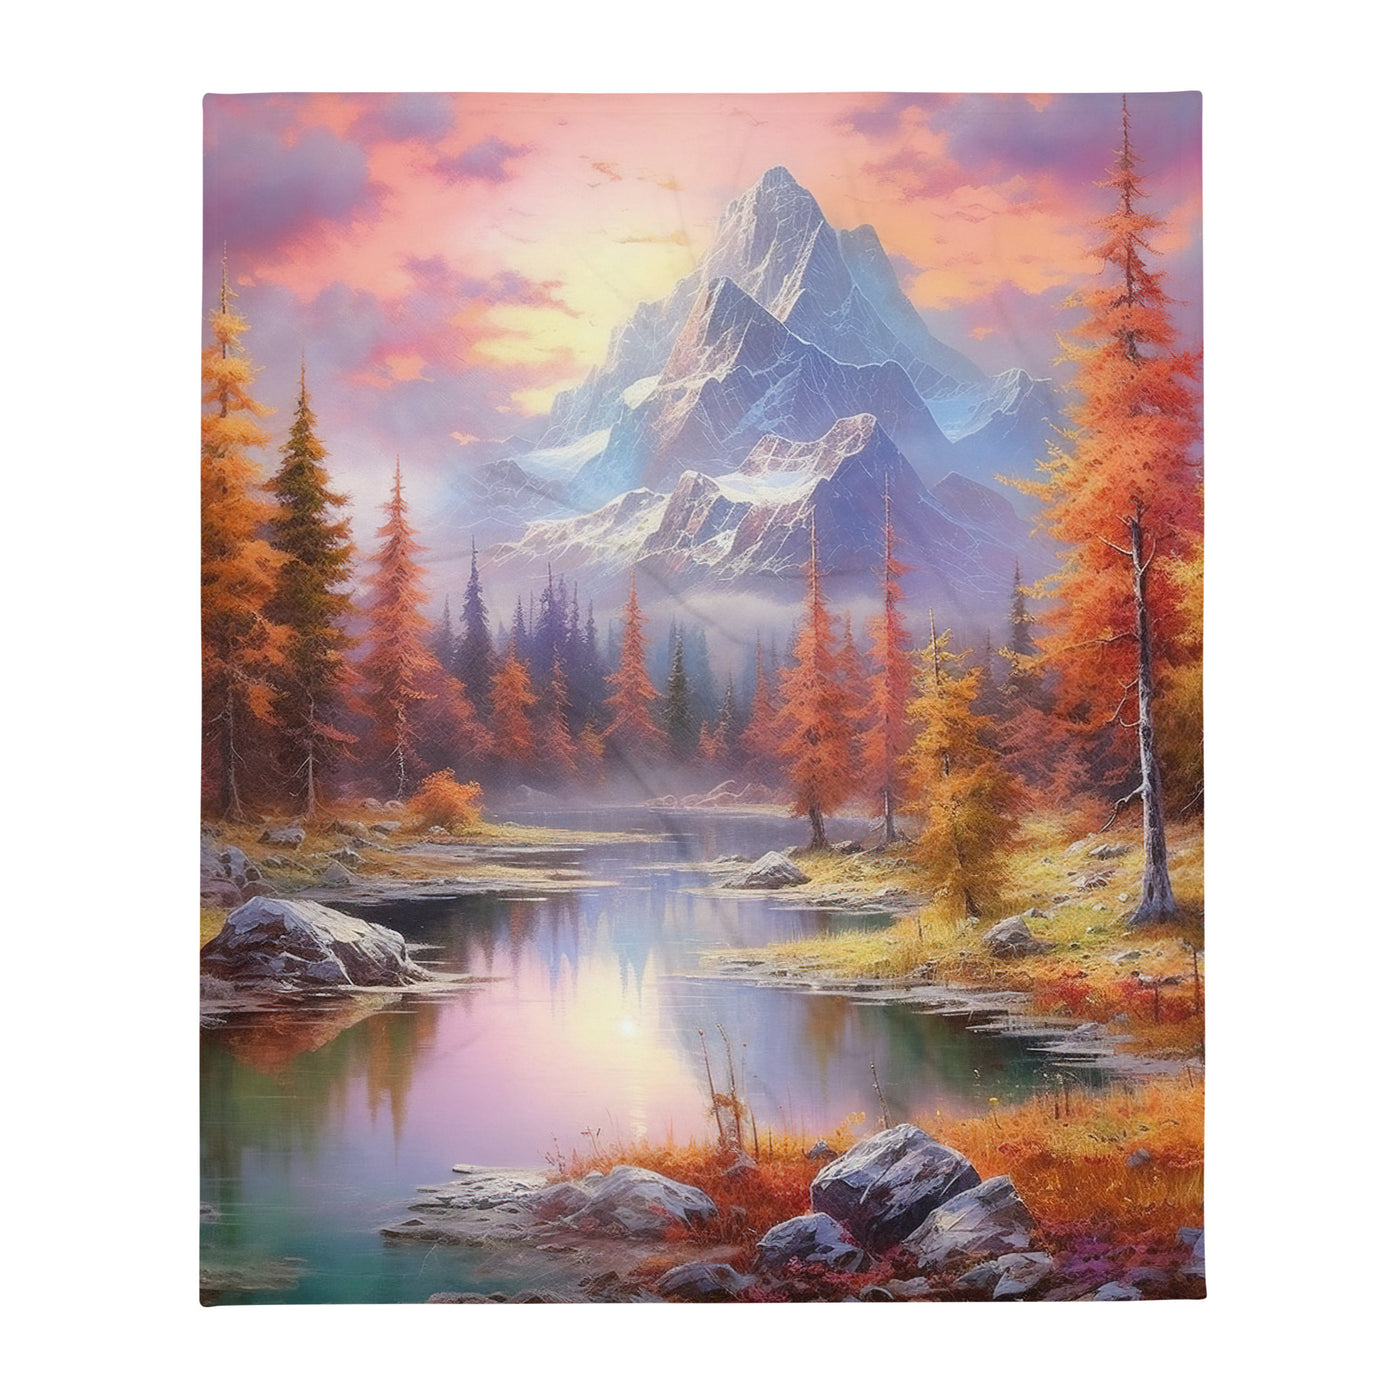 Landschaftsmalerei - Berge, Bäume, Bergsee und Herbstfarben - Überwurfdecke berge xxx 127 x 152.4 cm